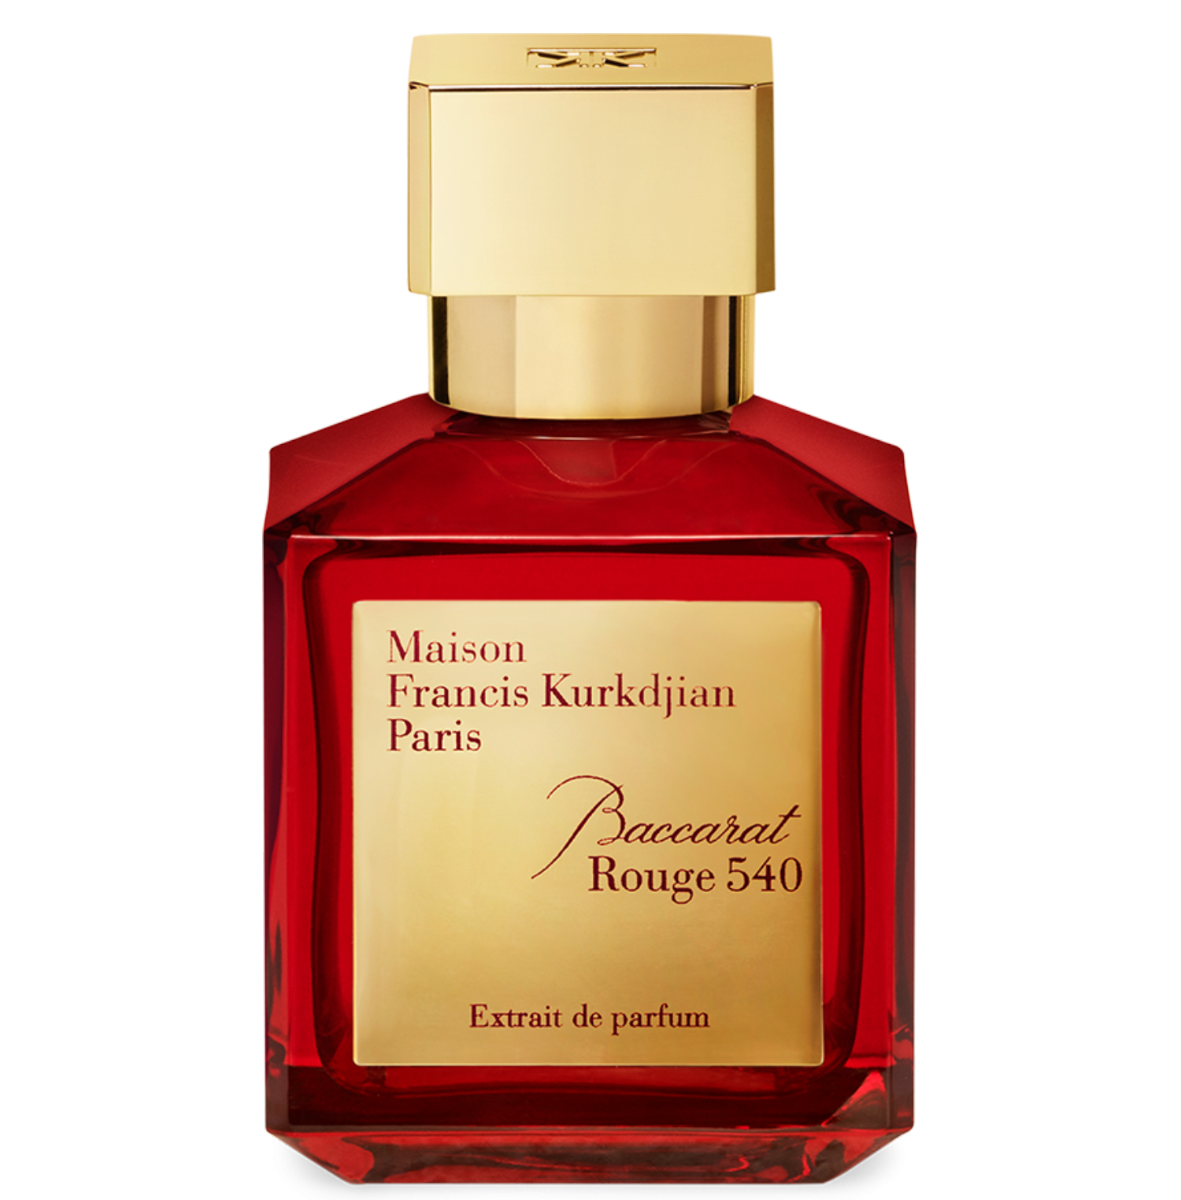 Baccarat Rouge 540 extrait de parfum